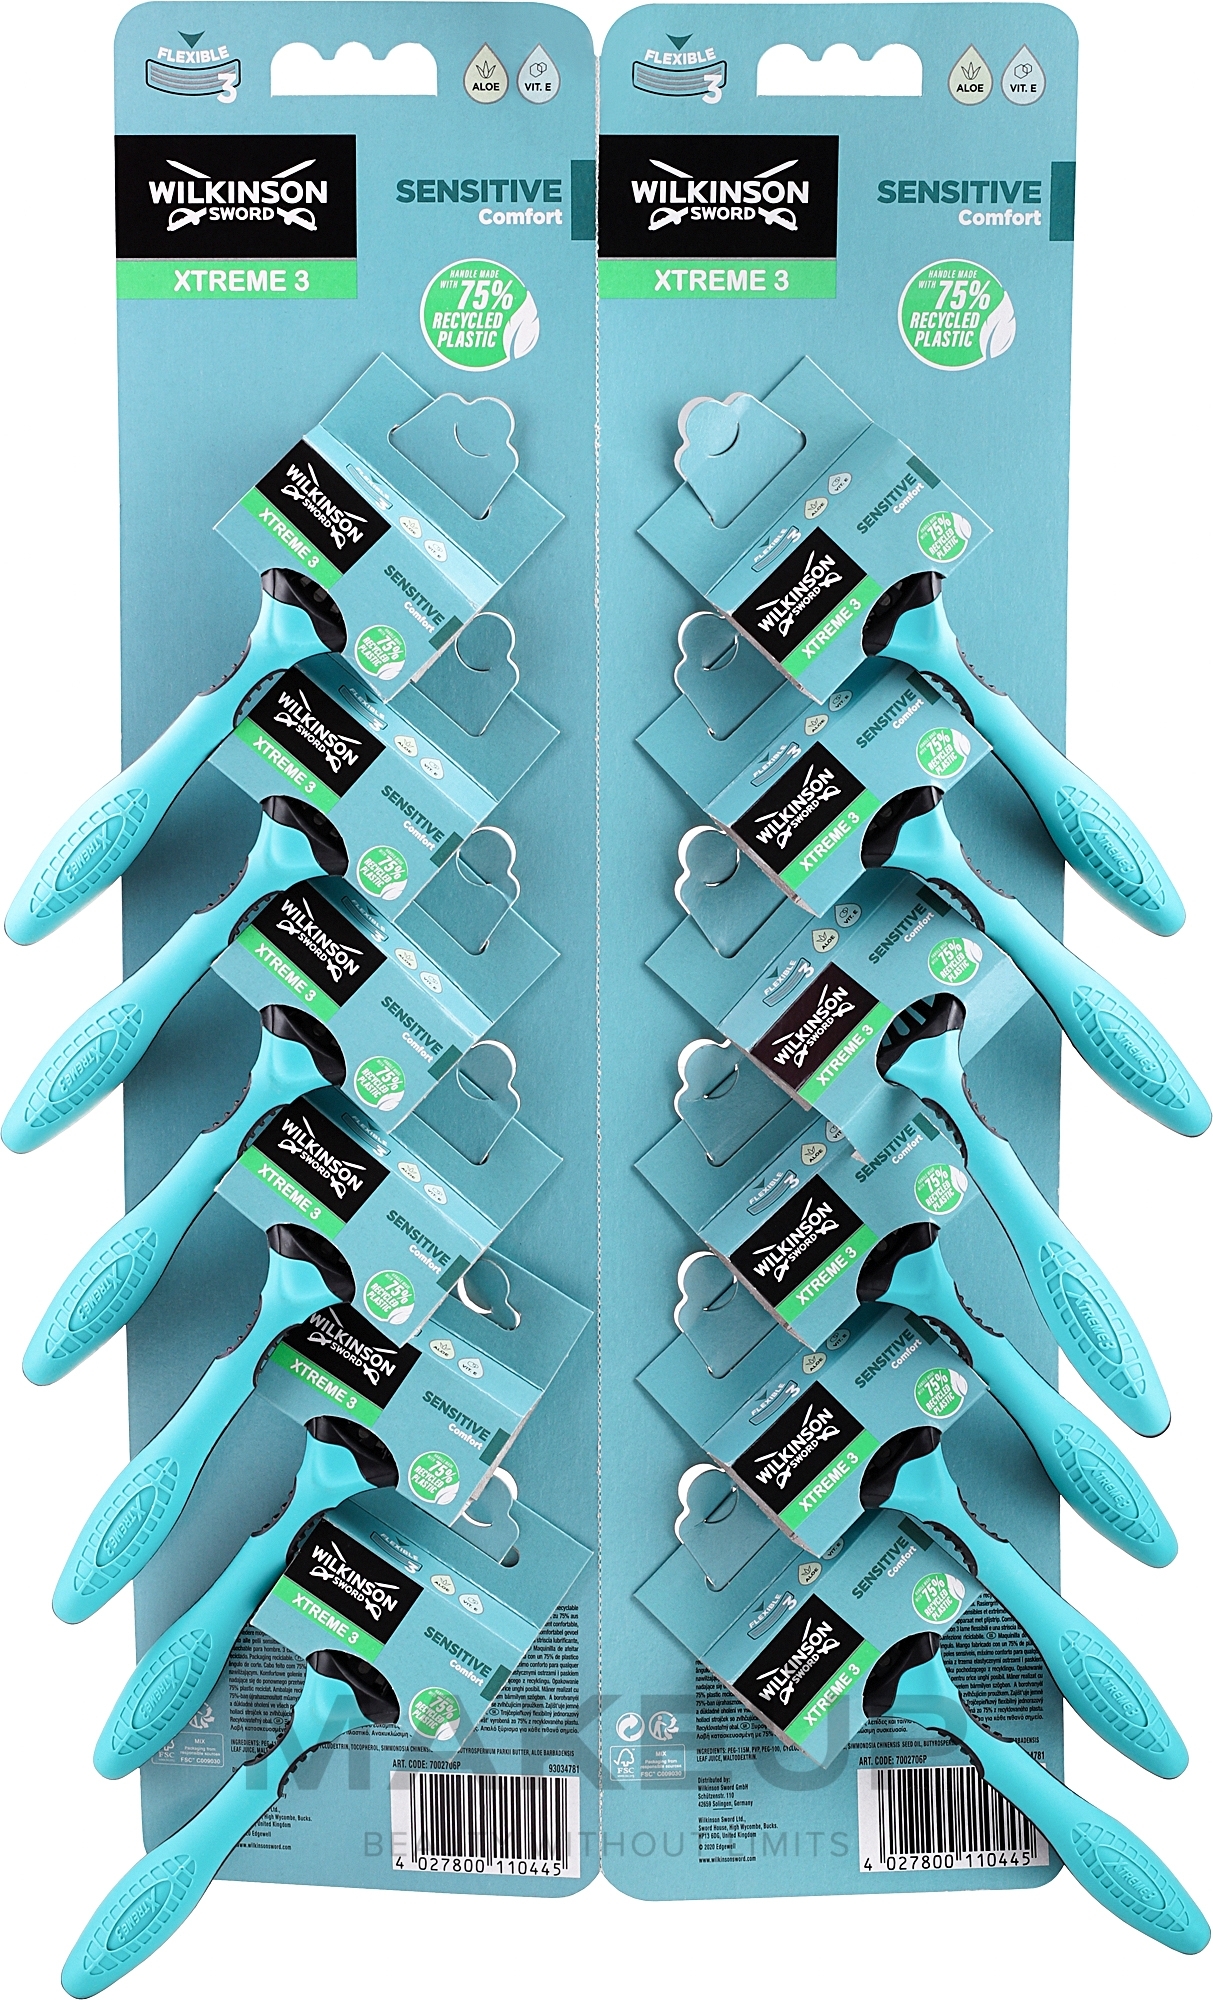 Zestaw jednorazowych maszynek do golenia - Wilkinson Sword Extreme 3 Sensitive — Zdjęcie 12 szt.